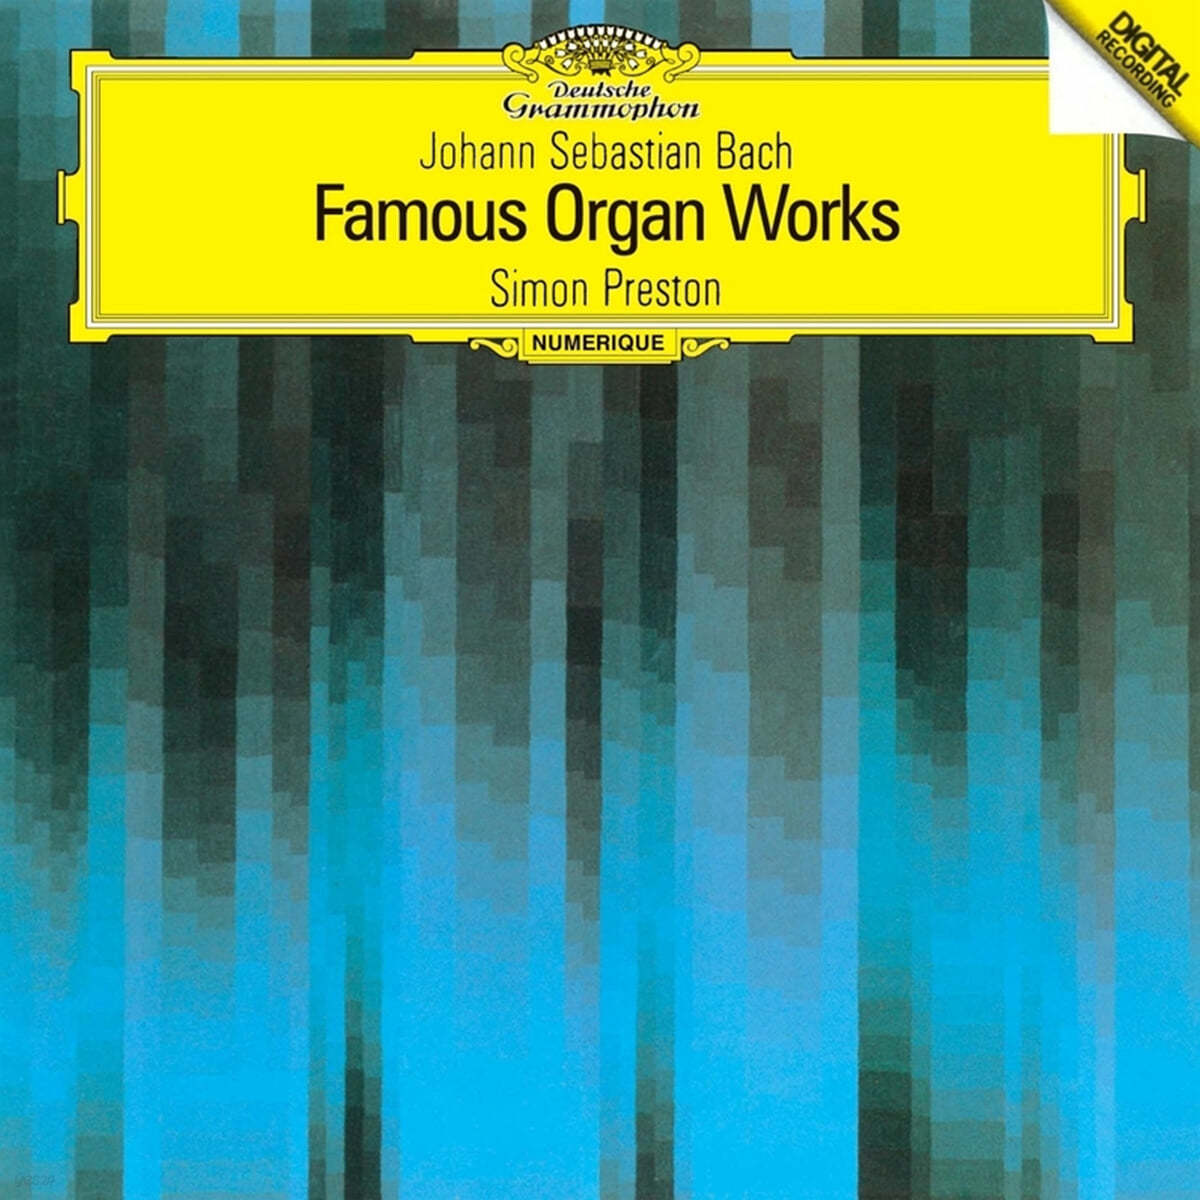 Simon Preston 바흐: 오르간 연주집 (J.S.Bach: Organ Works)